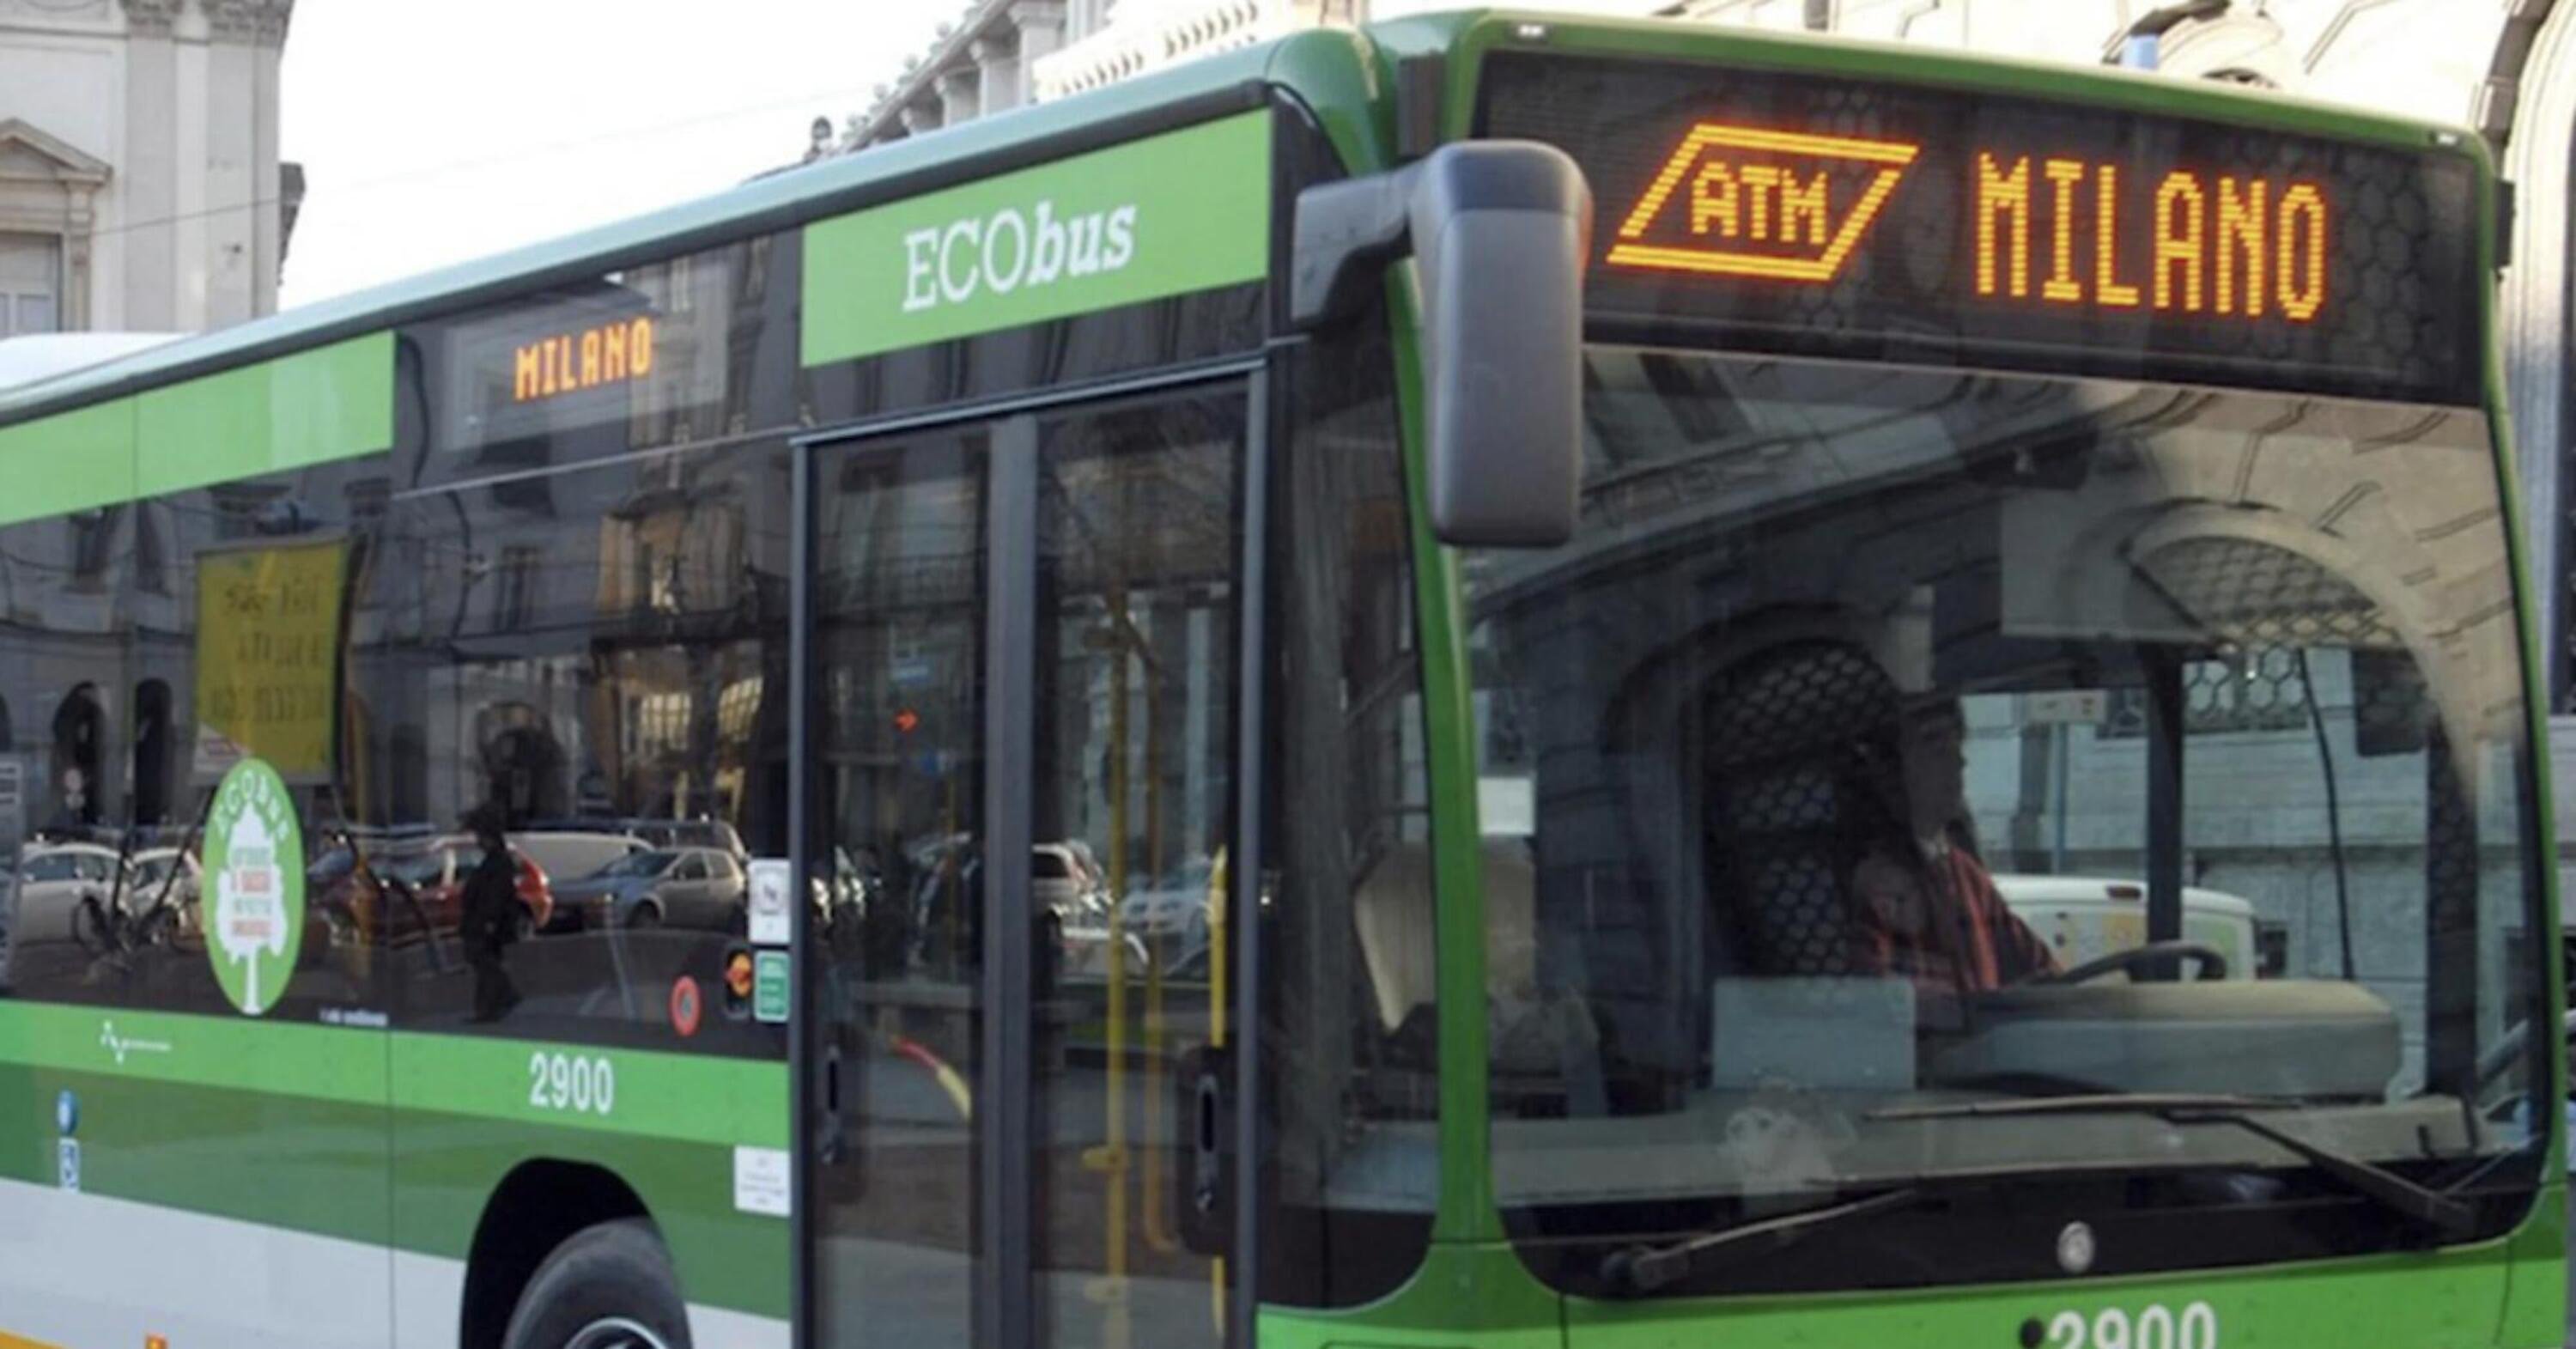 A Milano: investe pedone e la moto va a sbattere contro un bus